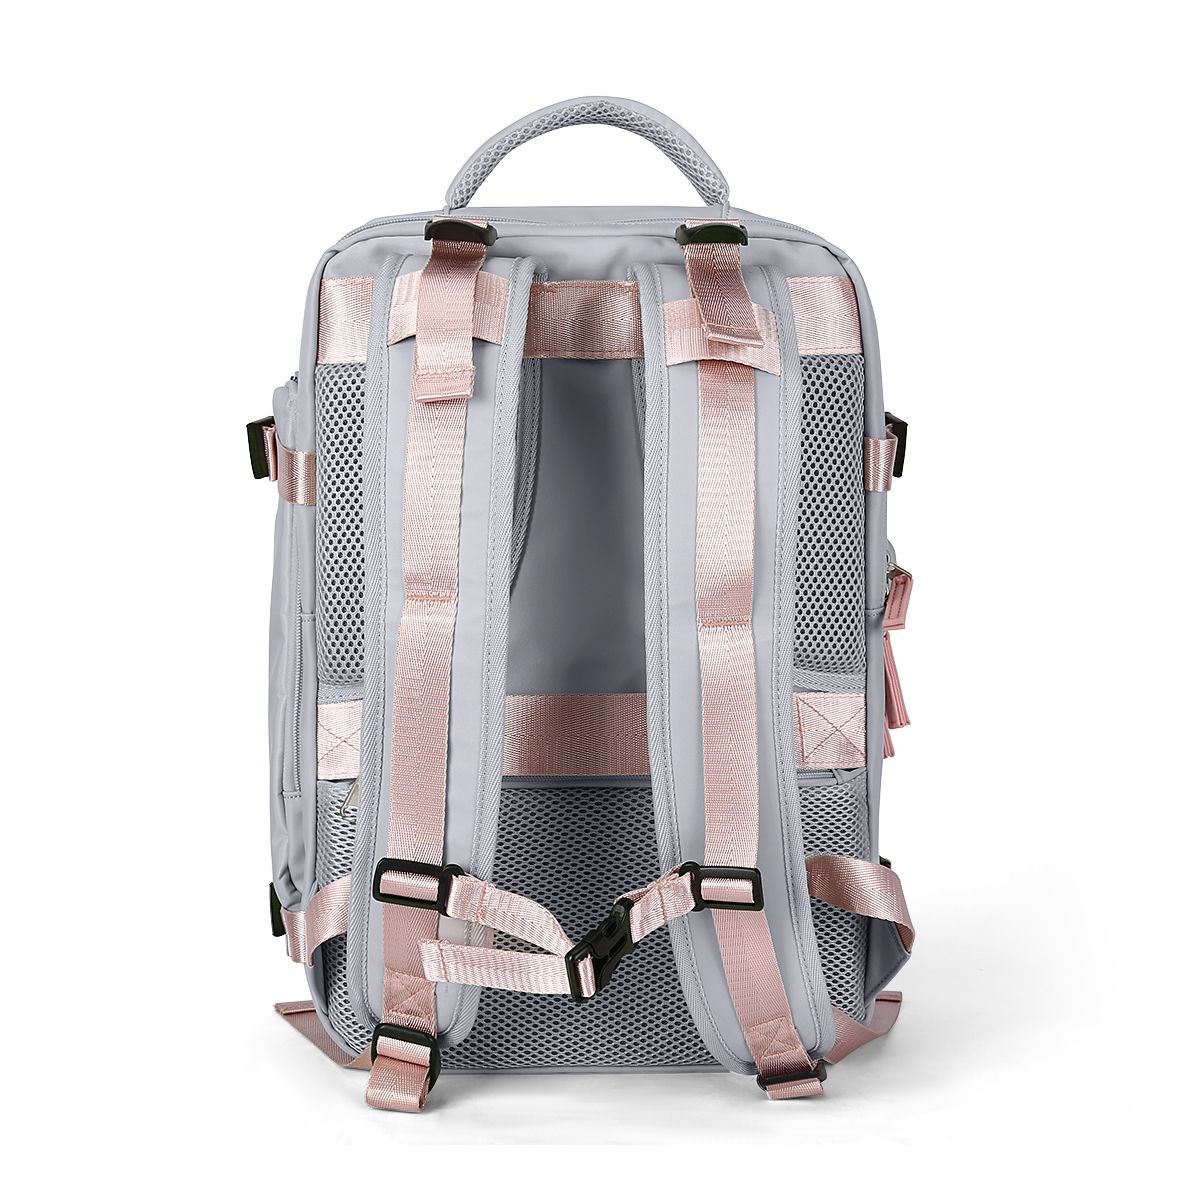 双肩背包女夏2021新款时尚大容量商务电脑包旅游行李包短途旅行包